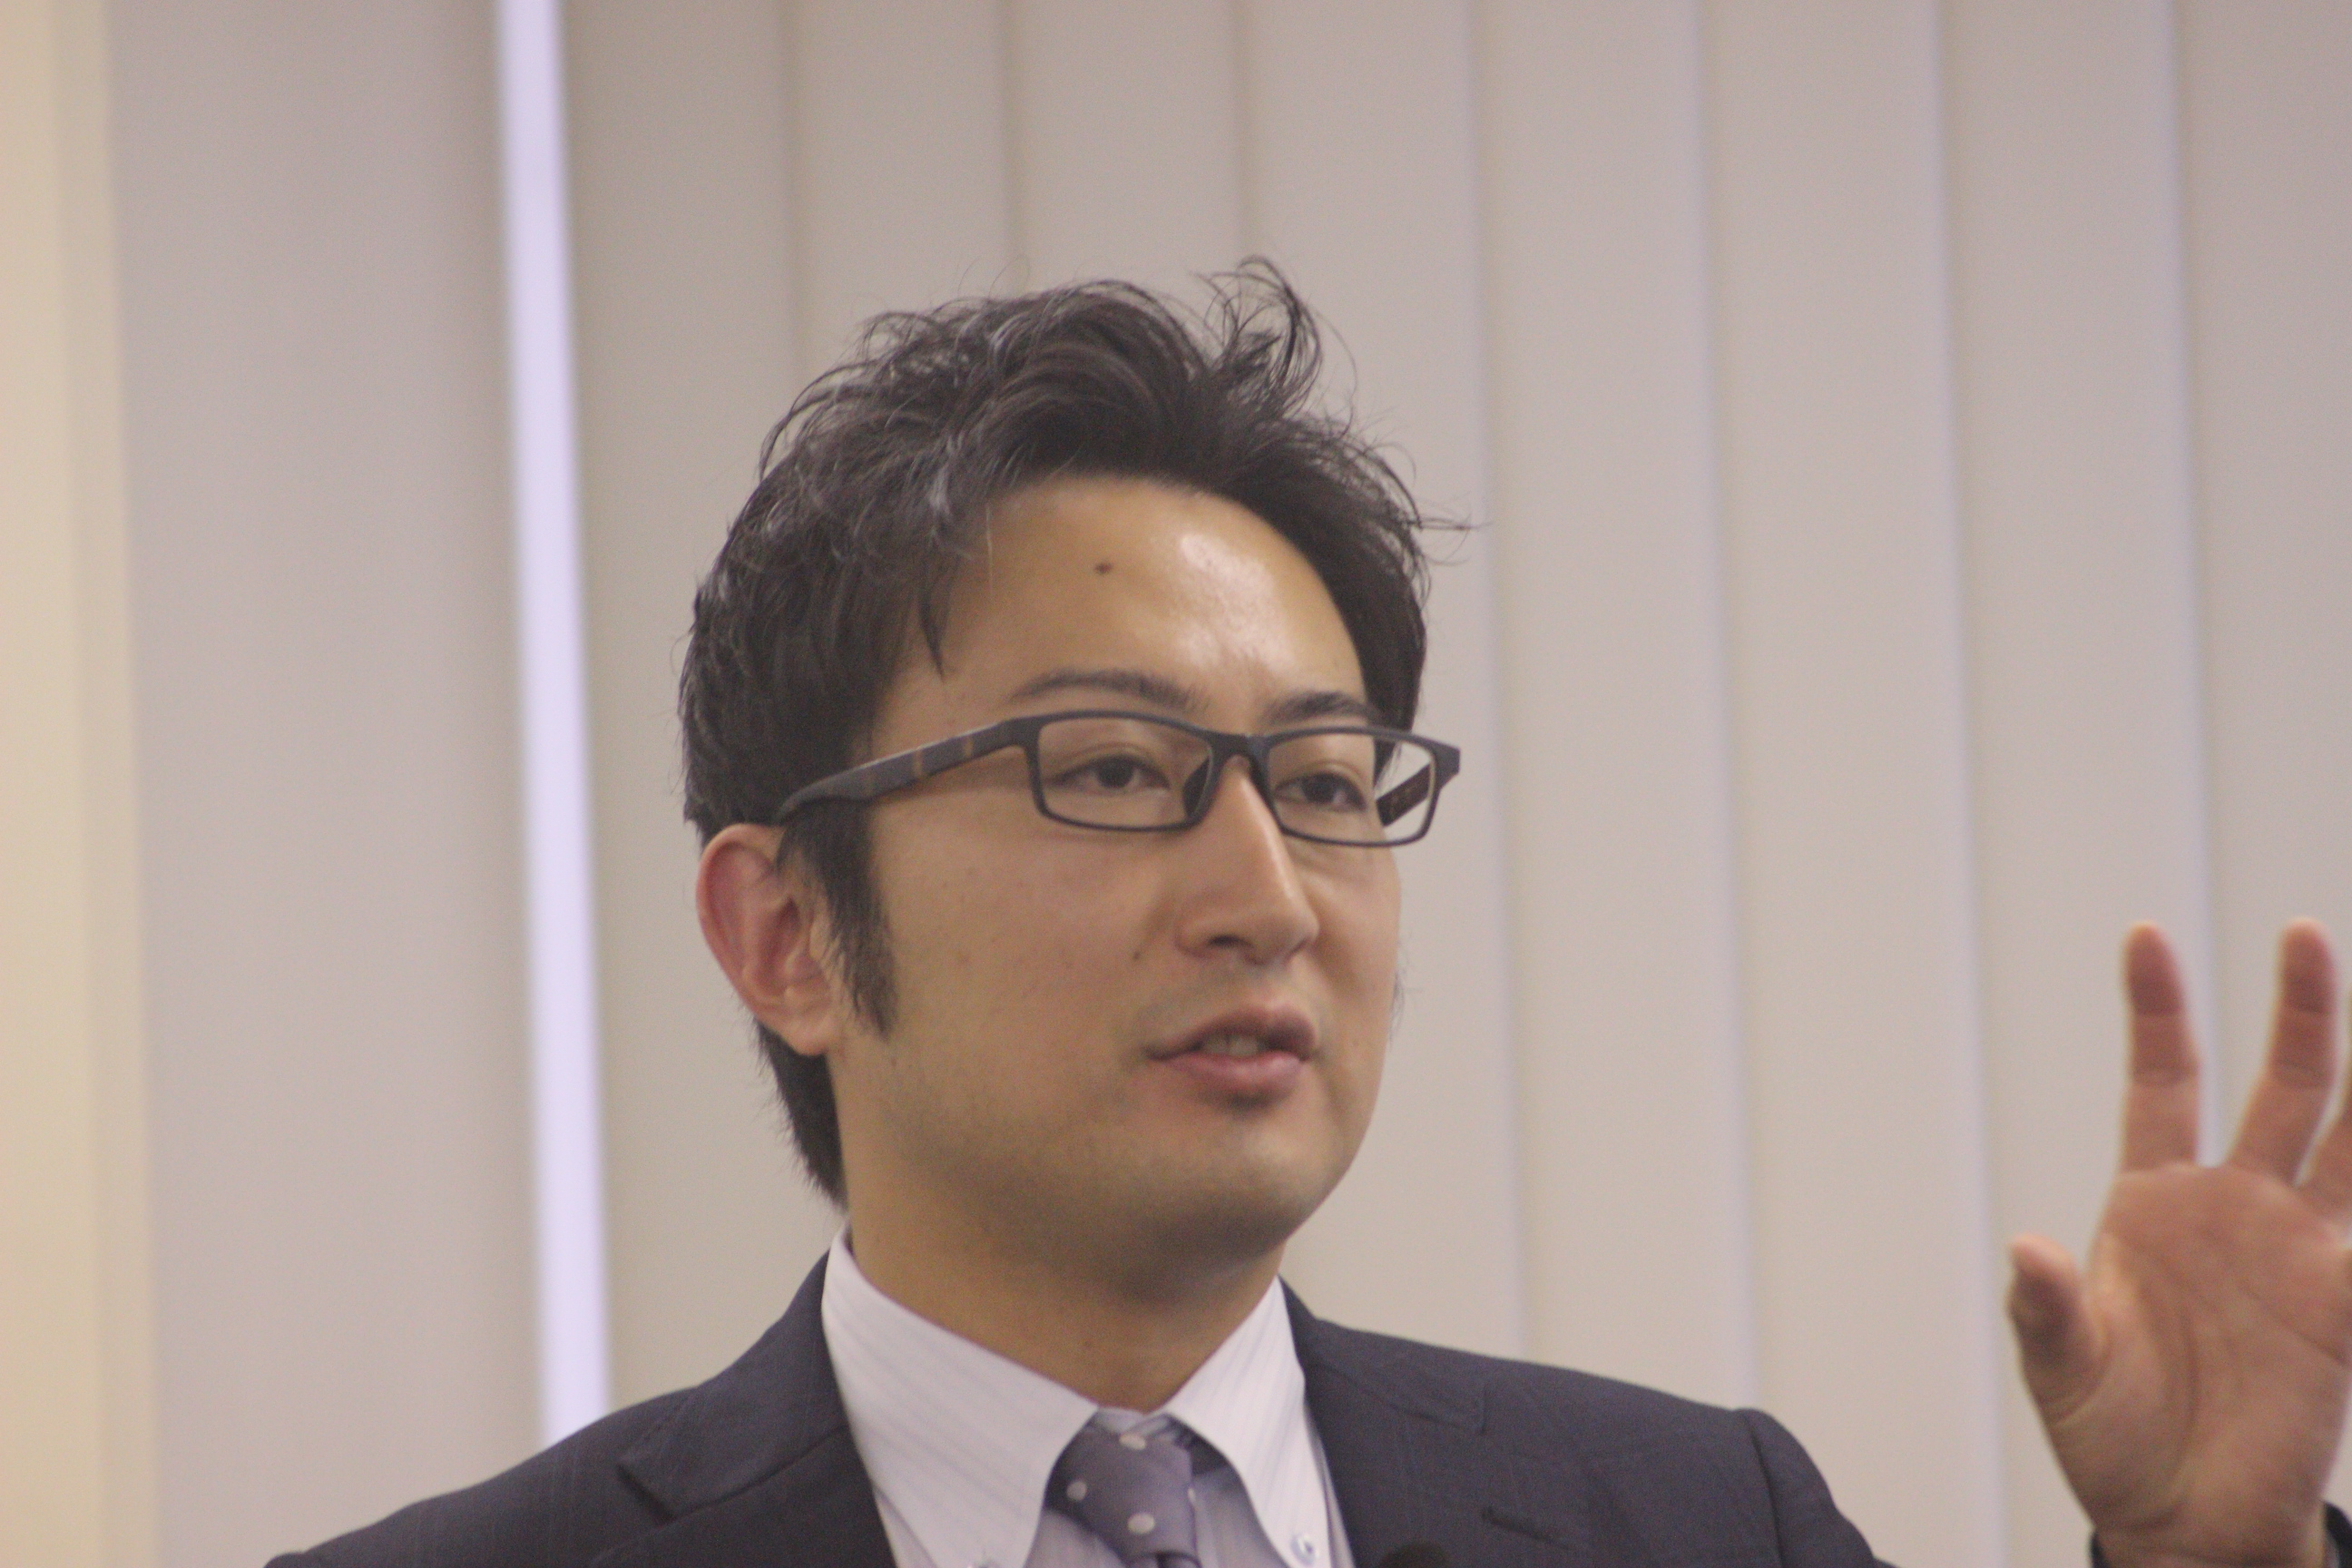 福岡地域戦略推進協議会（FDC） 事務局長 石丸修平 氏 が講演